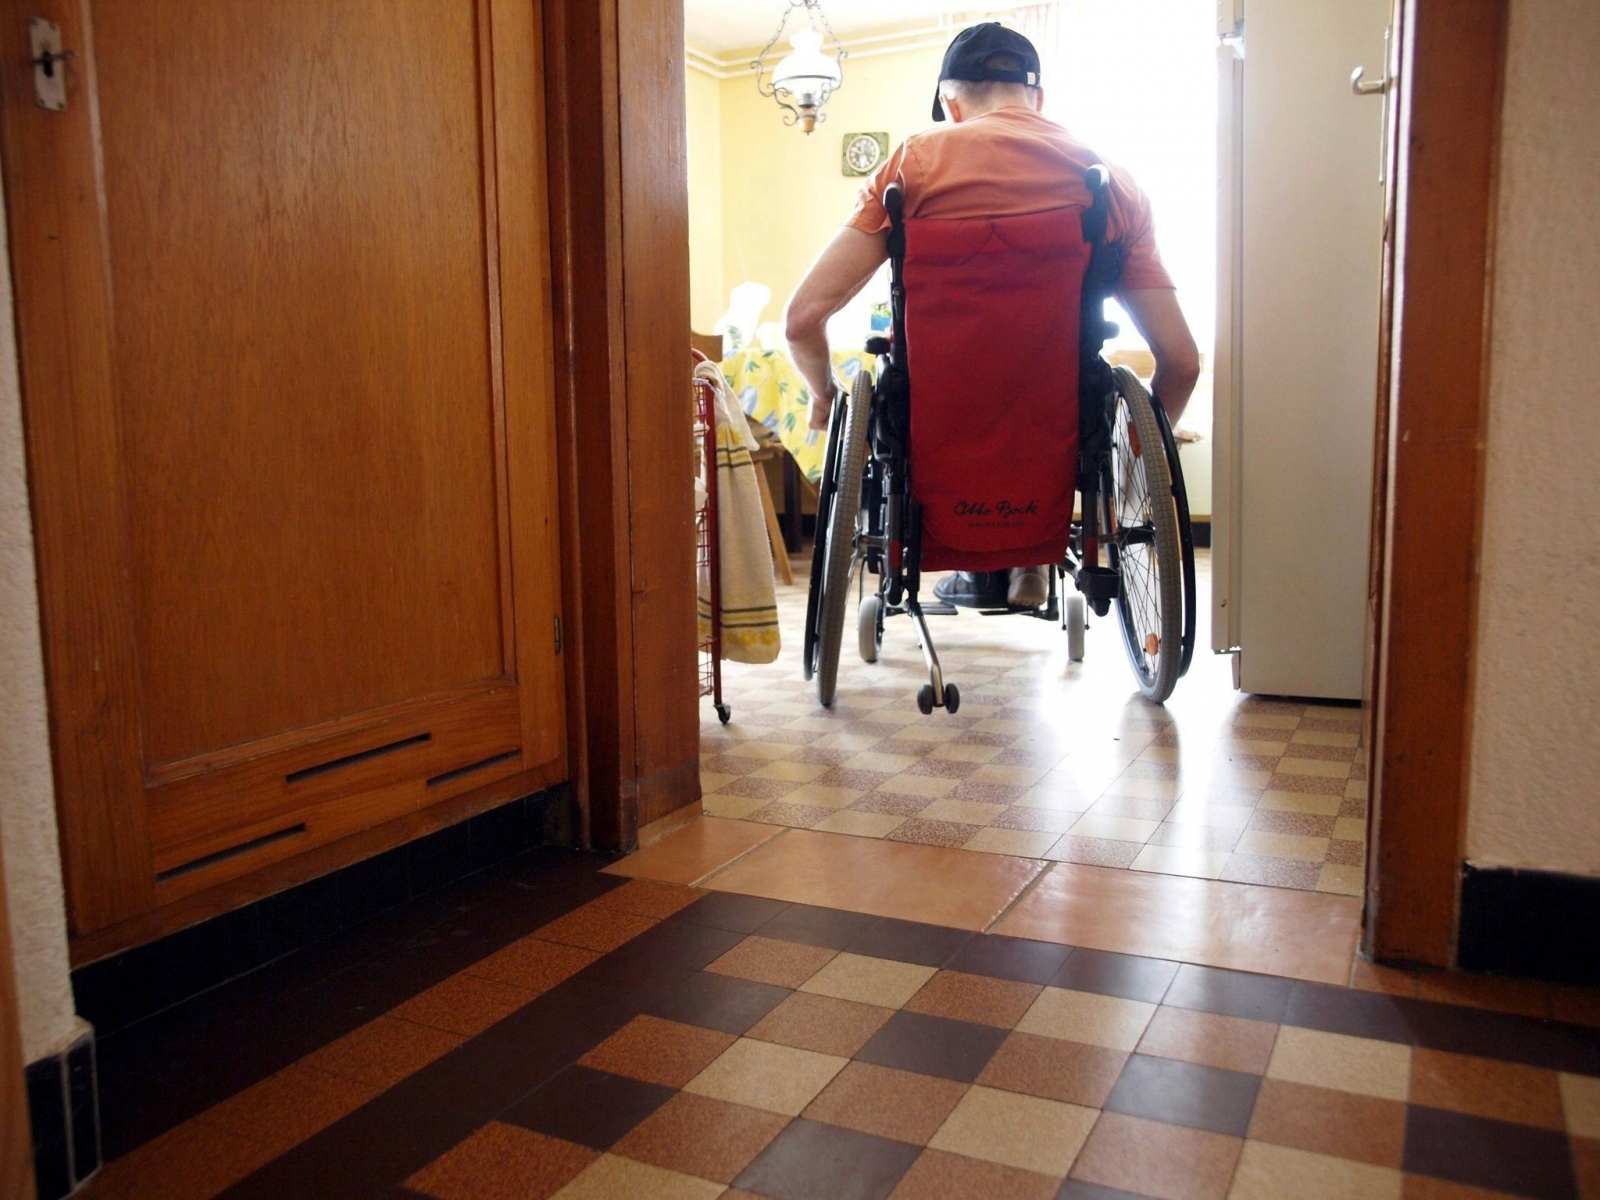 Pauschalentschädigung für die Betreuung von pflegebedürftigen Personen.

Bild: Ein Mann im Rollstuhl.



Foto: FN / Aldo Ellena, Plaffeien, 17.01.2010 Ein Mann im Rollstuhl